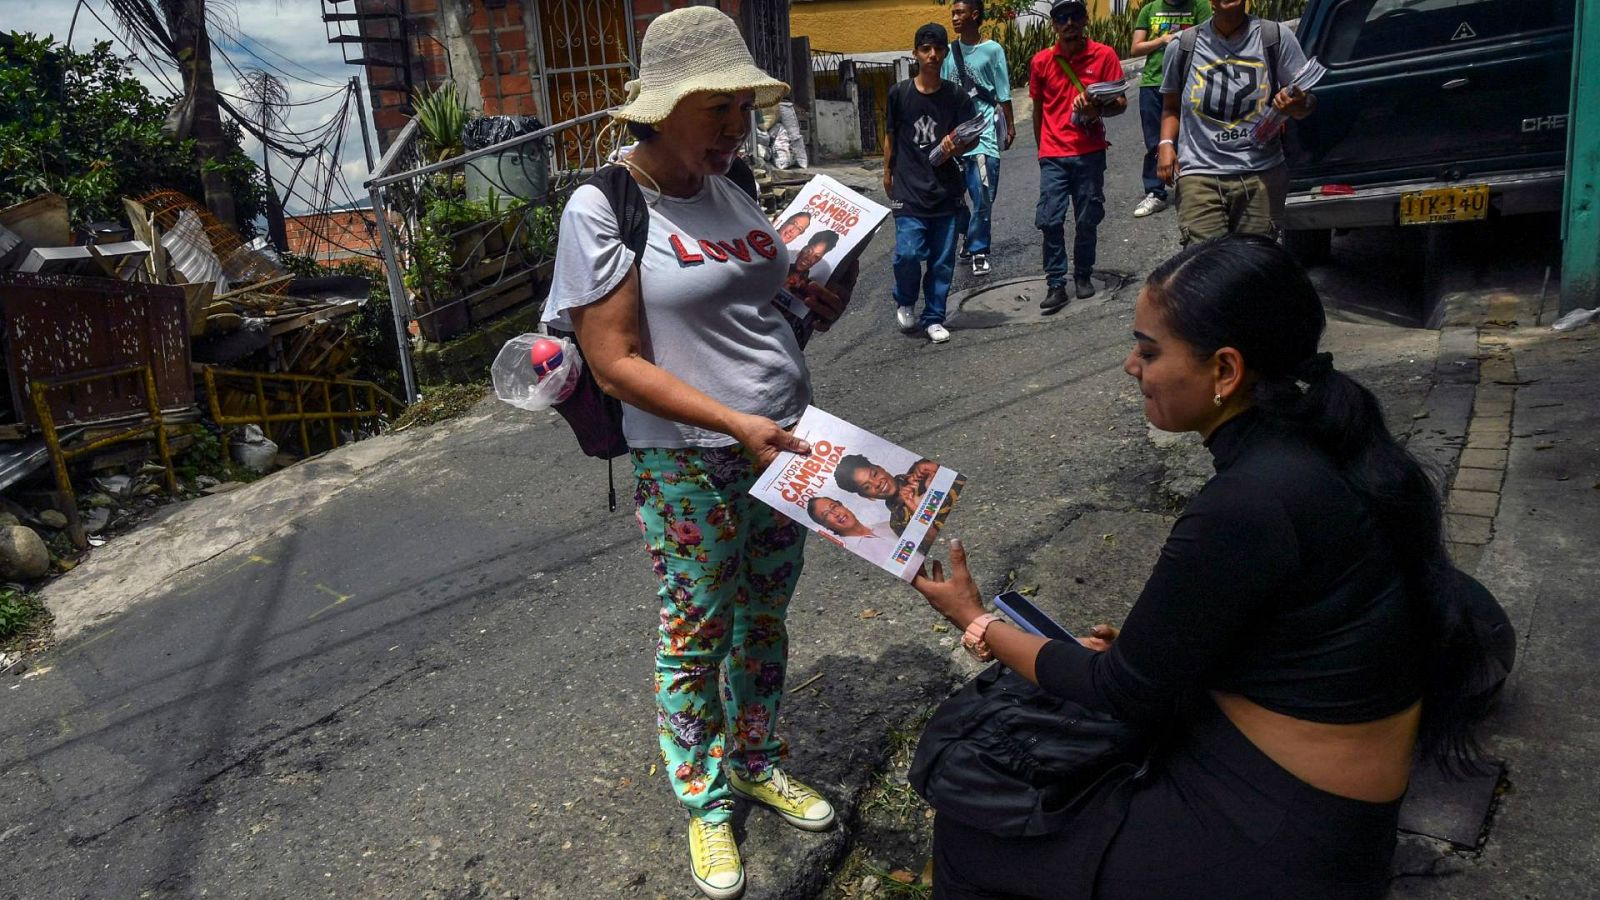 Cinco continentes - Colombia se enfrenta a unas elecciones impredecibles - Escuchar ahora